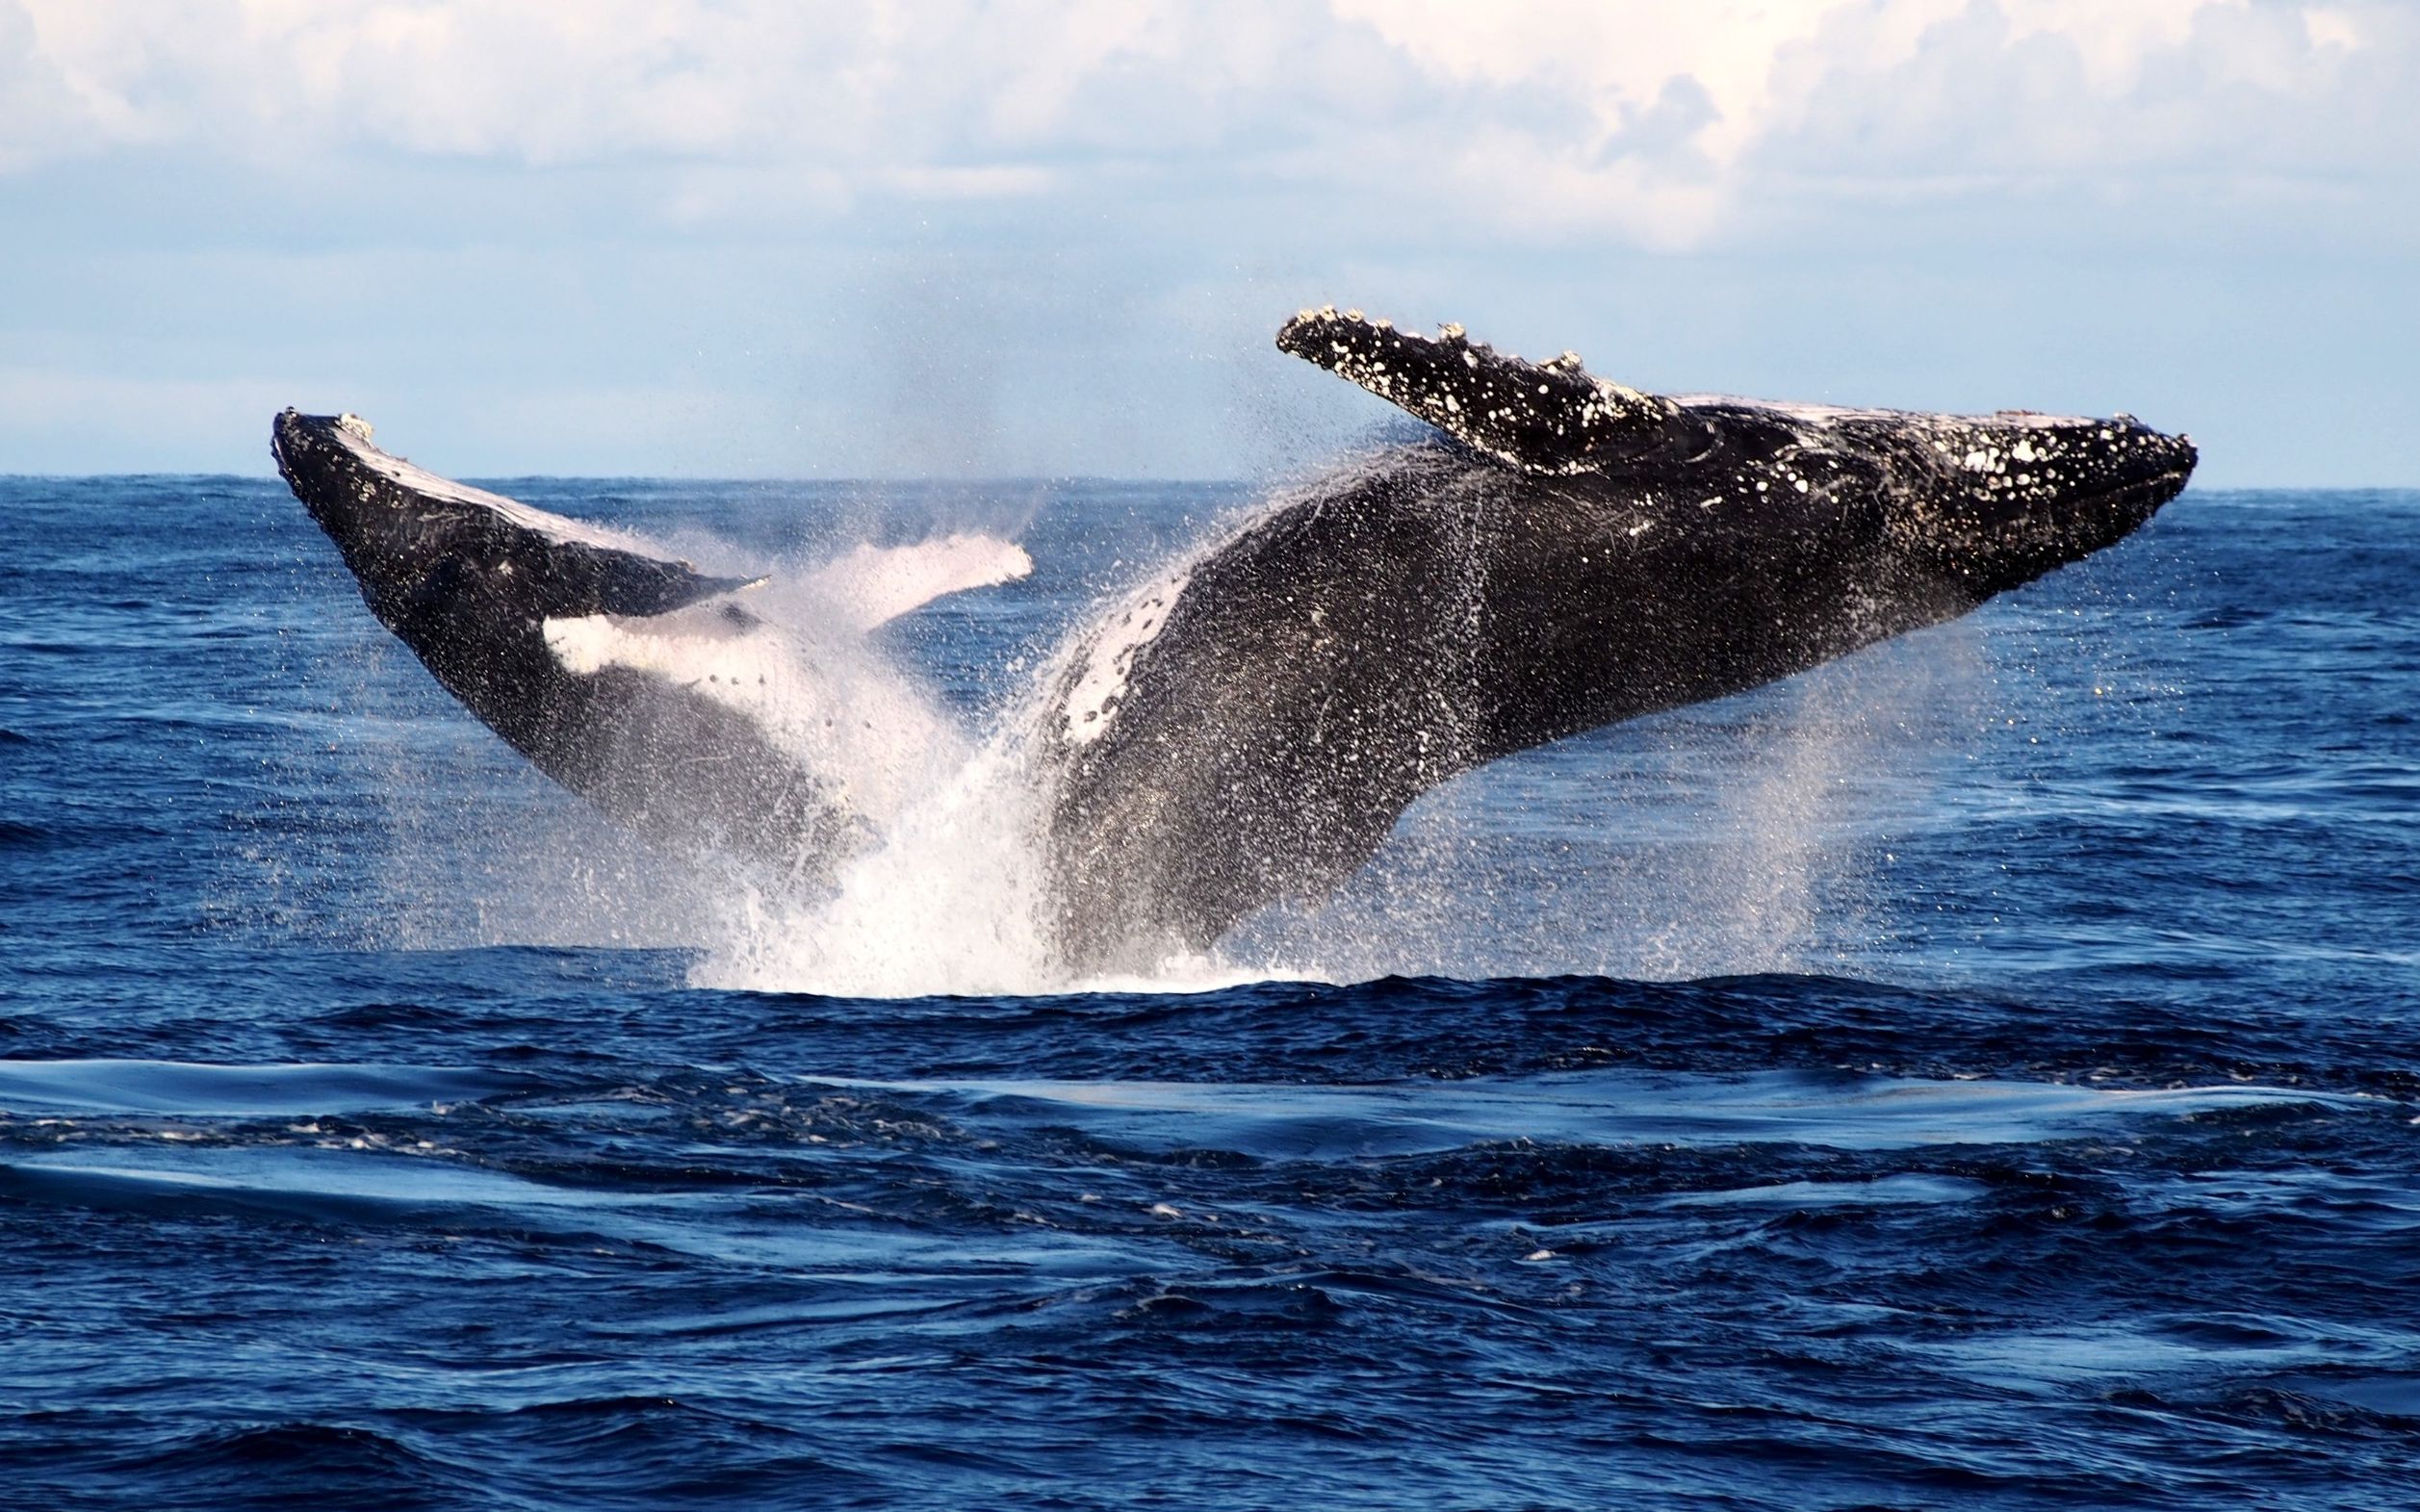 可近距离抚摸 鲸鱼迁徙伪装成“岩石”靠近船只